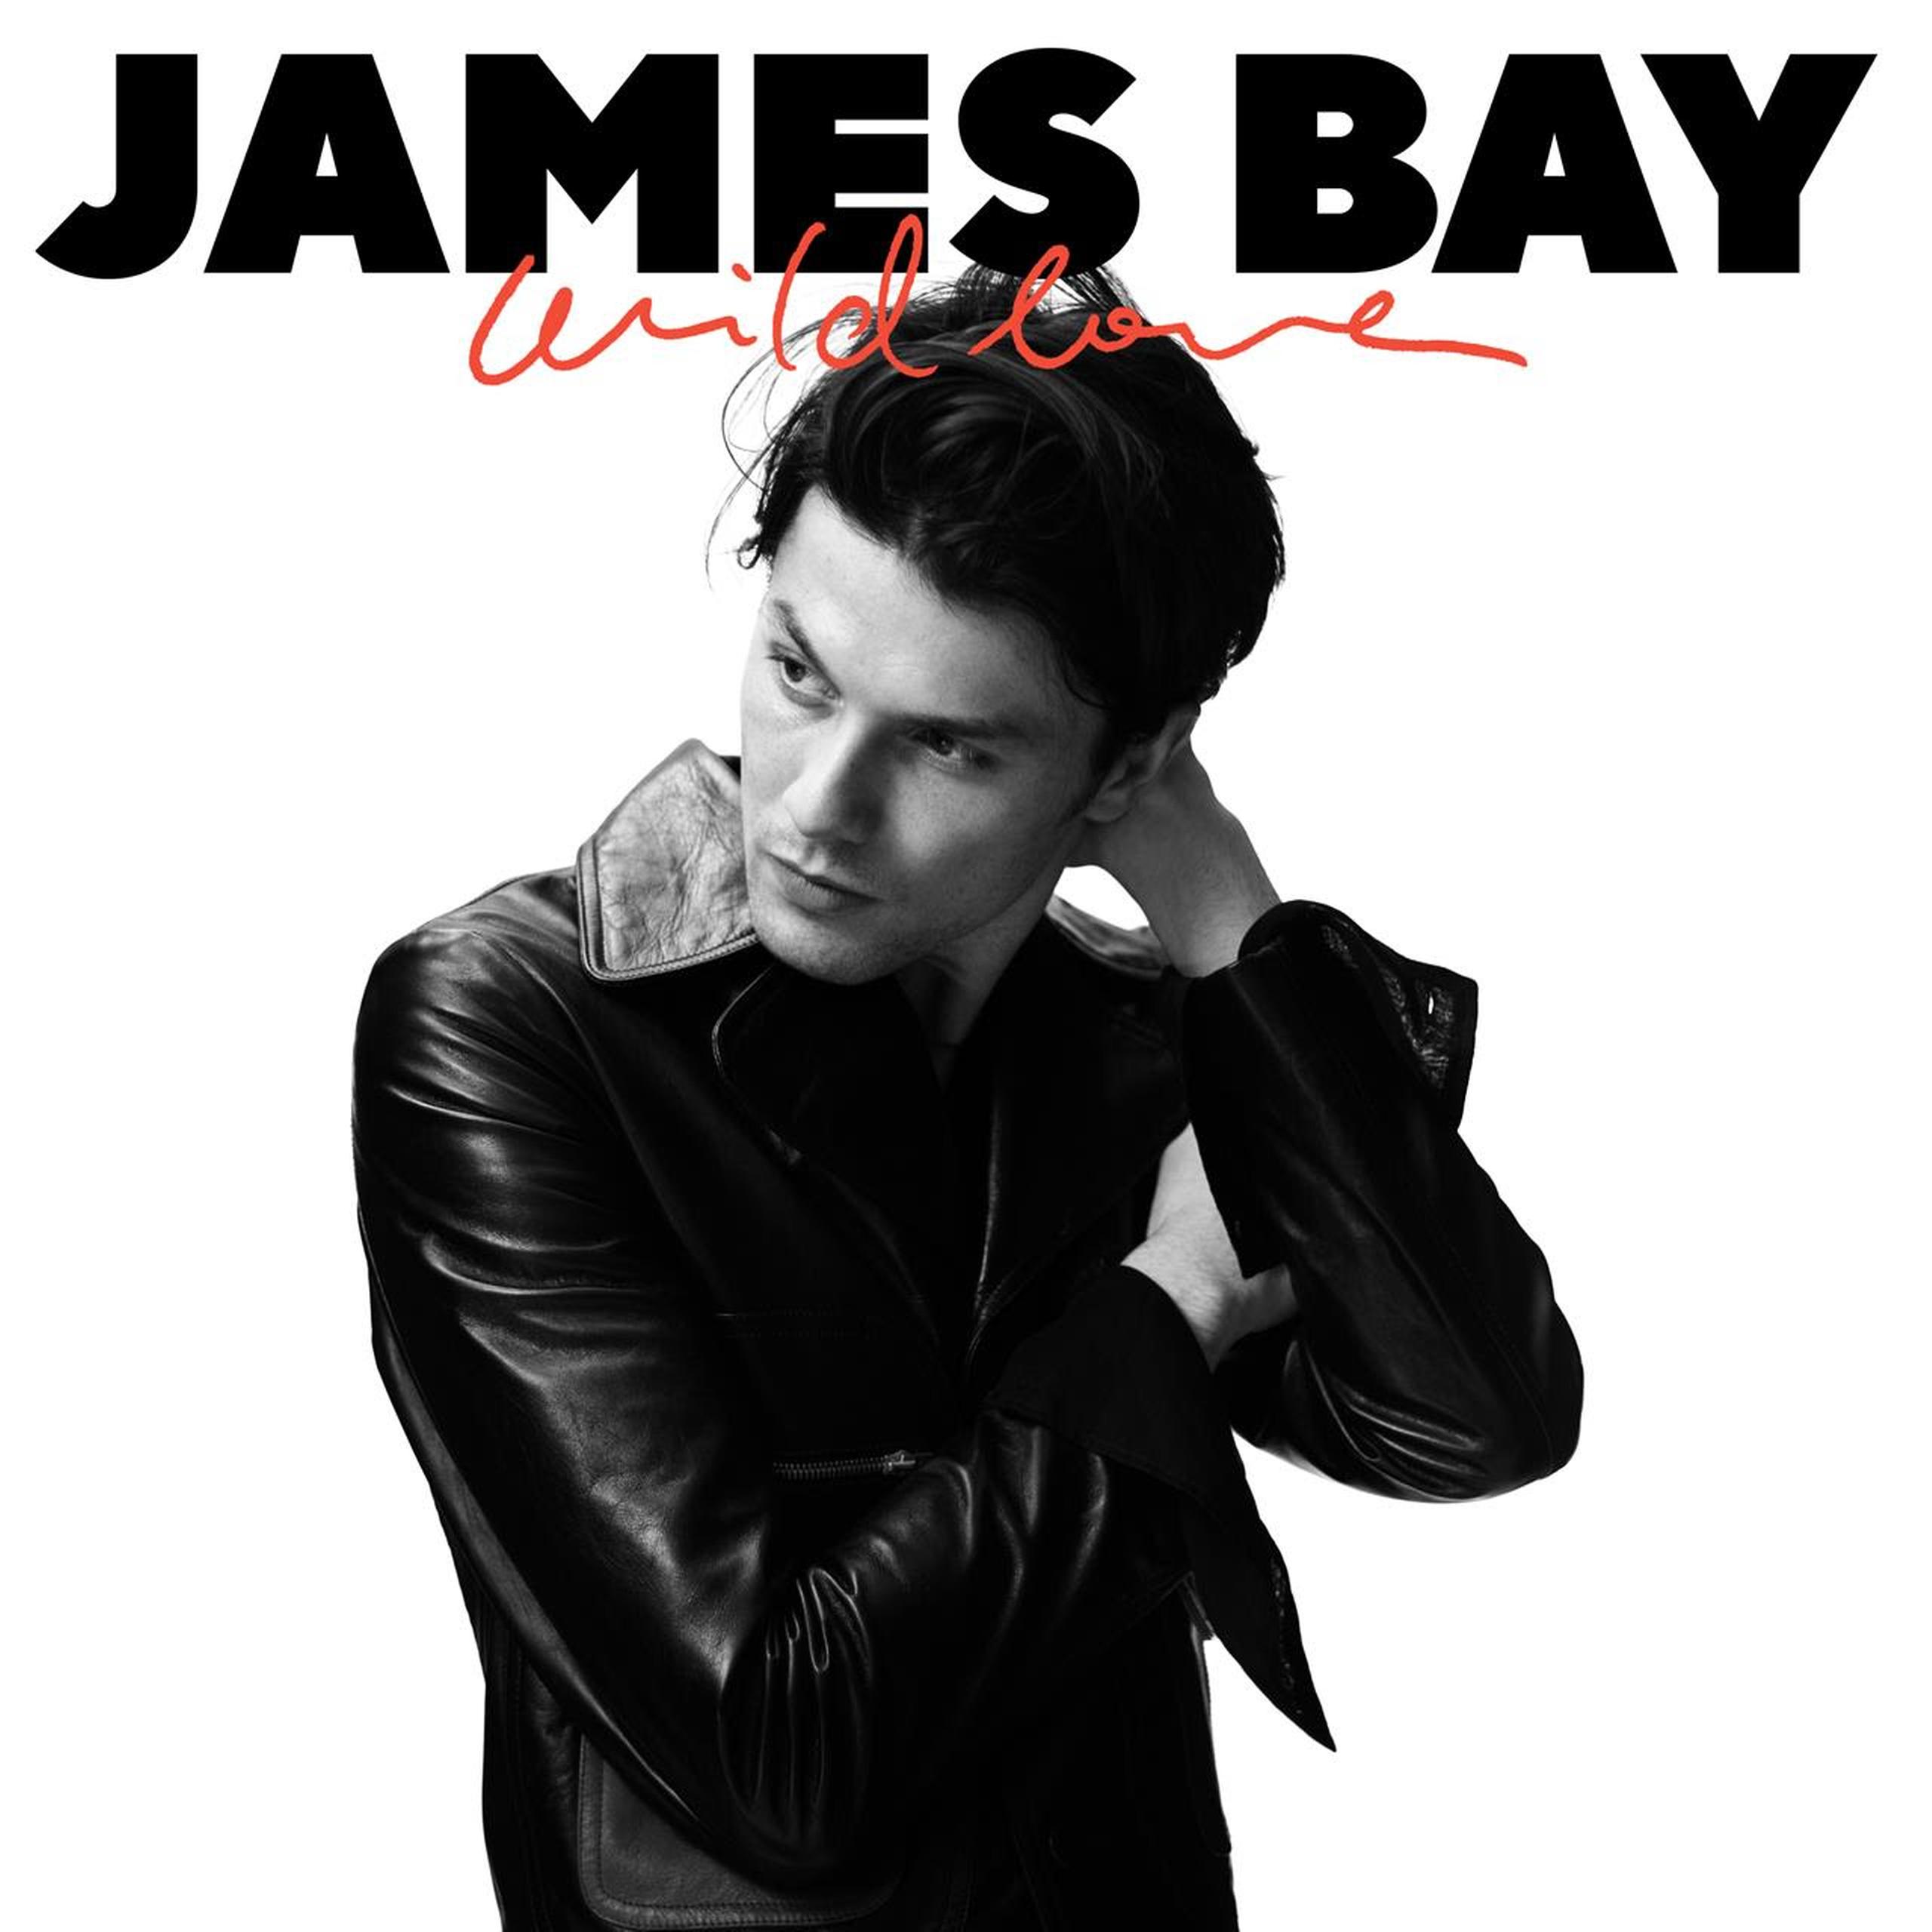 James Bay estrena el videoclip de ‘Wild Love’ y una versión acústica